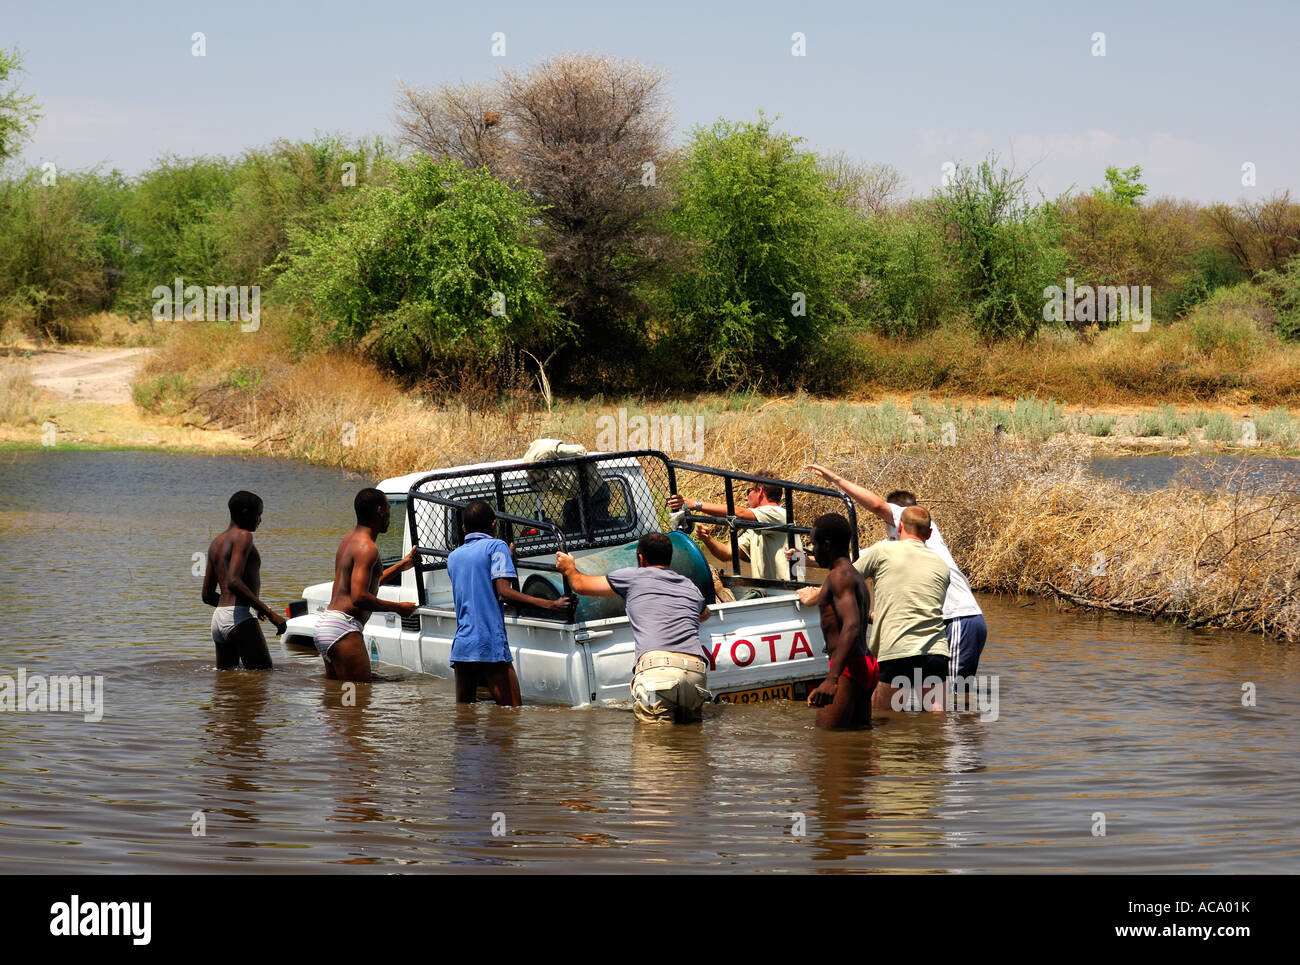 Quatre roues motrices jeep booged vers le bas tout en traversant une rivière, le travail d'équipe, Botswana, Africa Banque D'Images